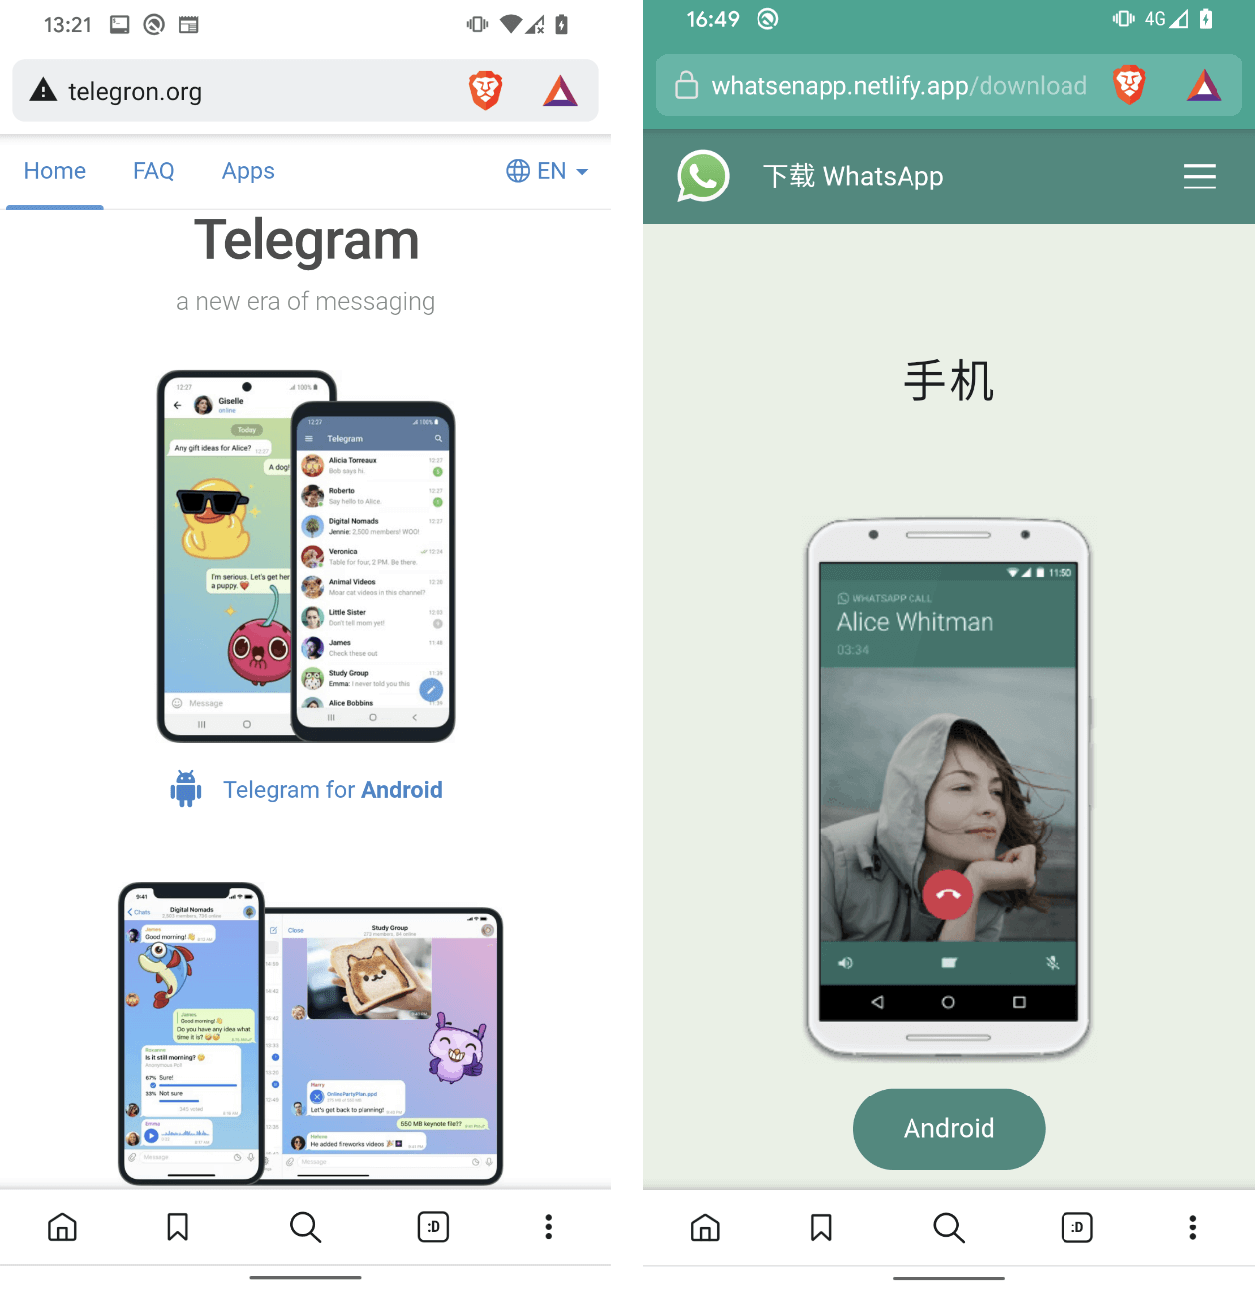 Figur 1. Webbplatser som efterliknar Telegram och WhatsApp